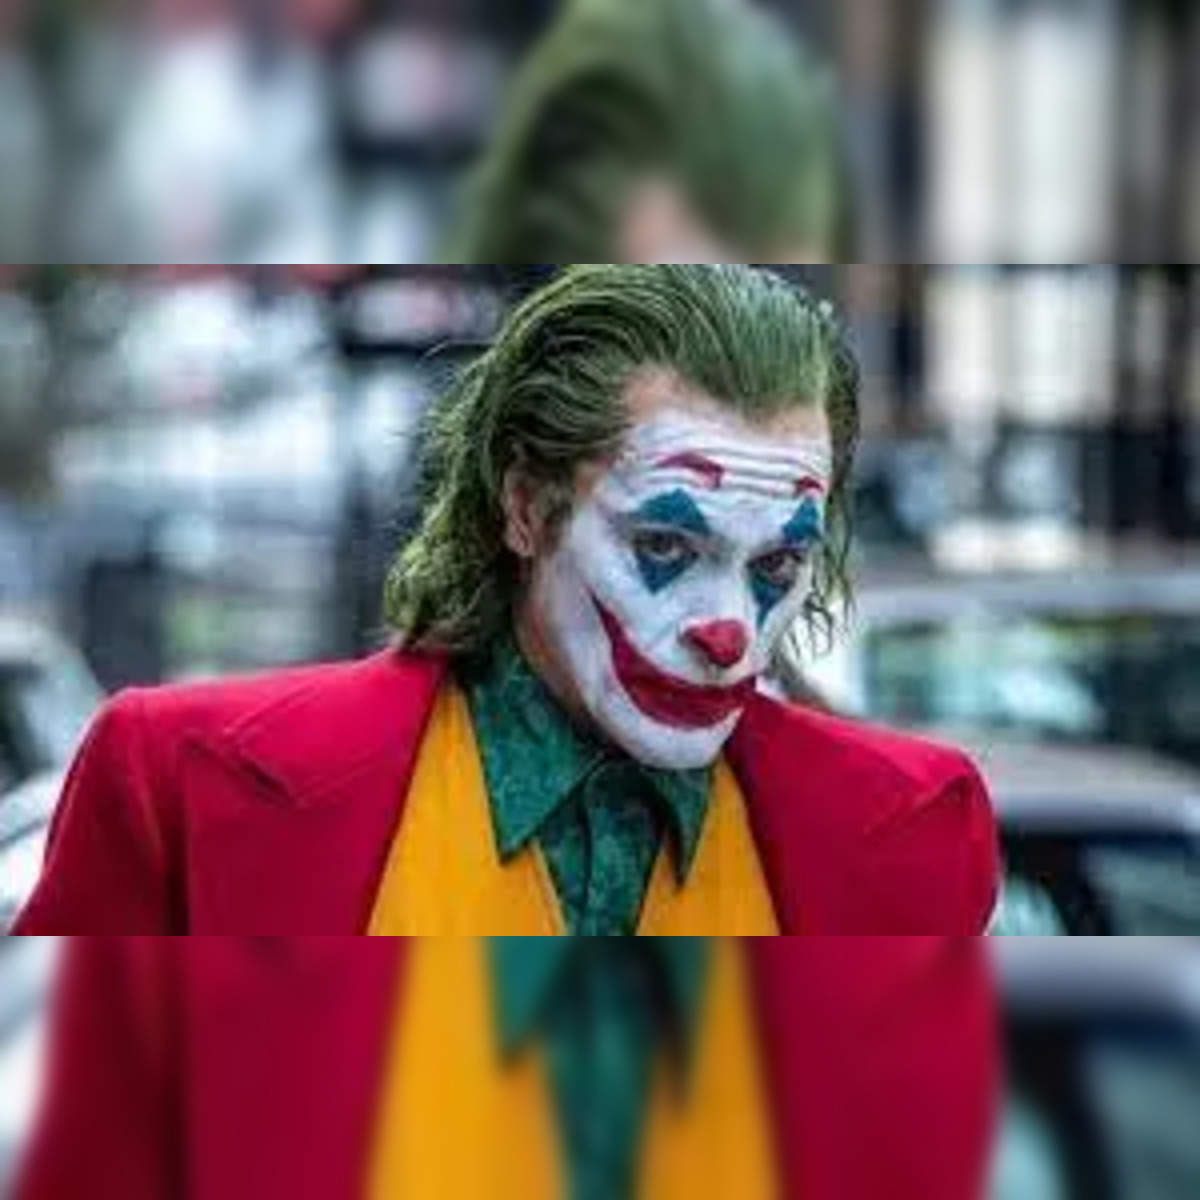 joker: Joker 2 first look out; shows Joaquin Phoenix's Arthur